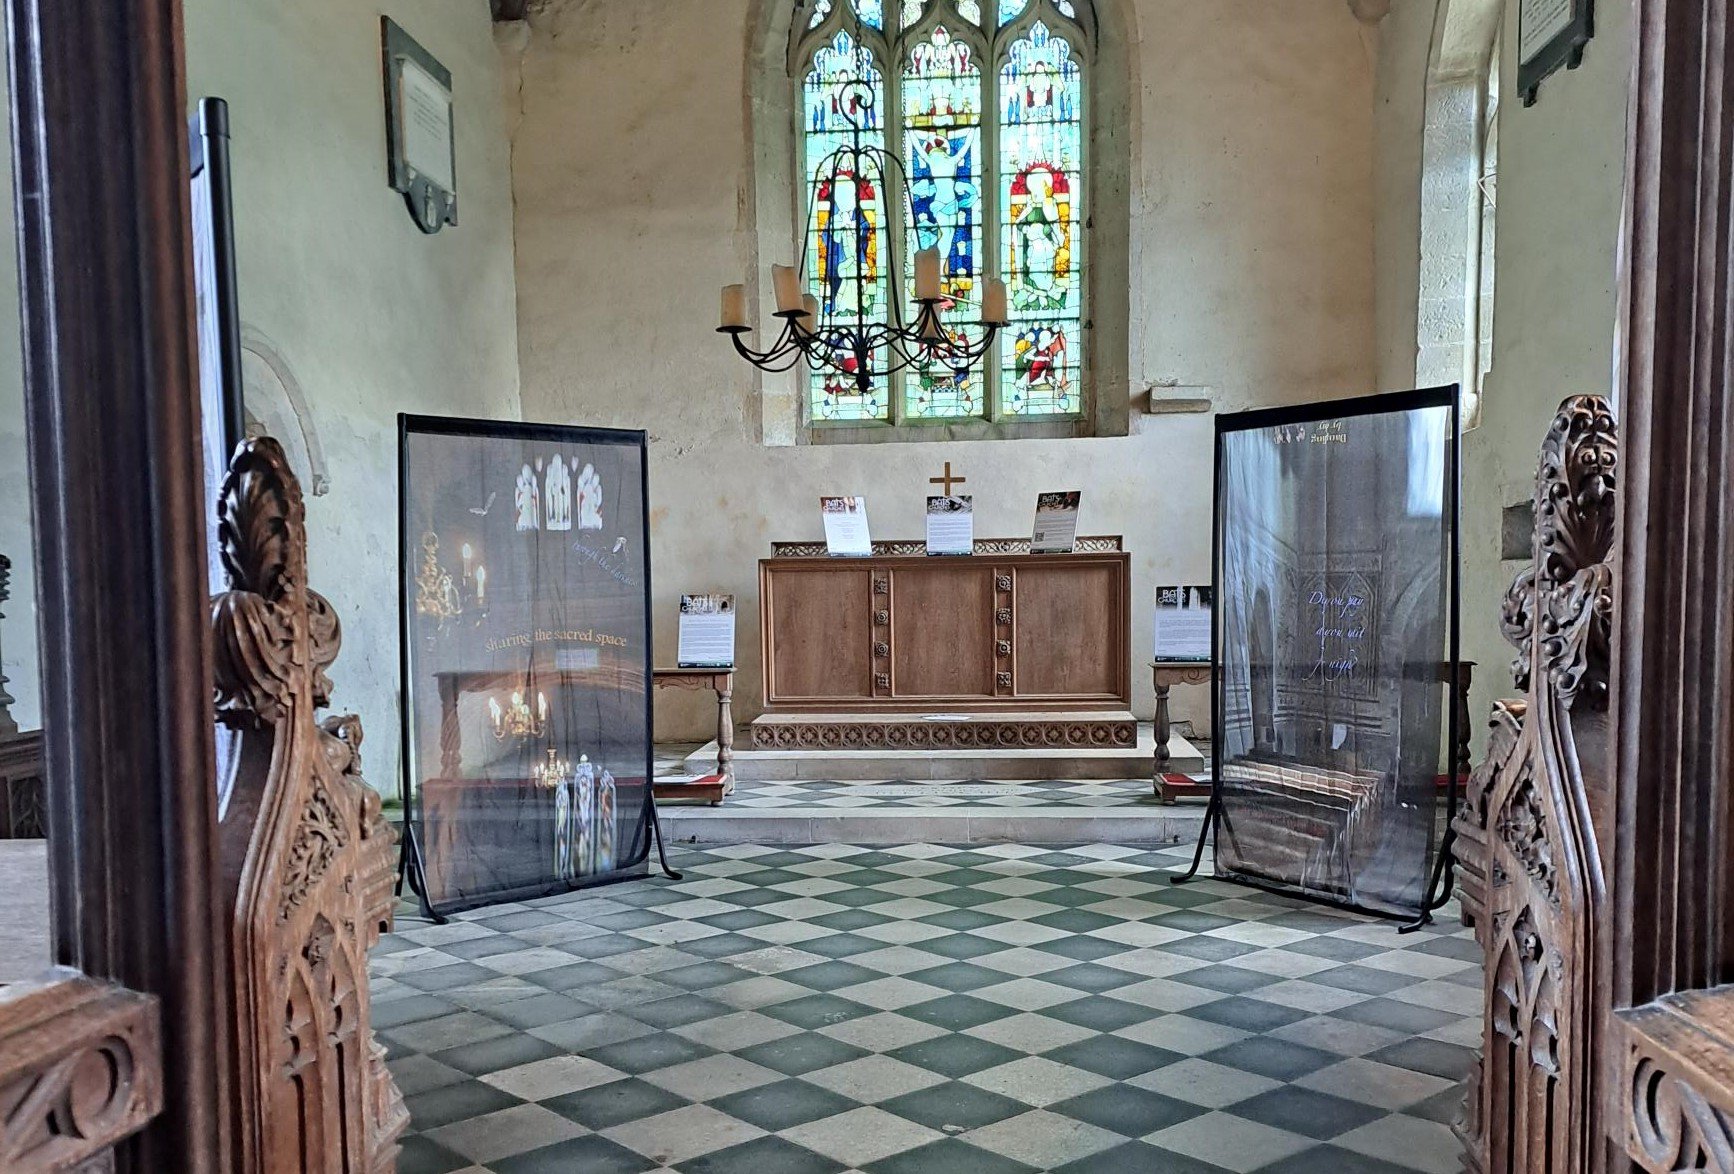 Two panels OAWAAP in Wintringham chancel (2)